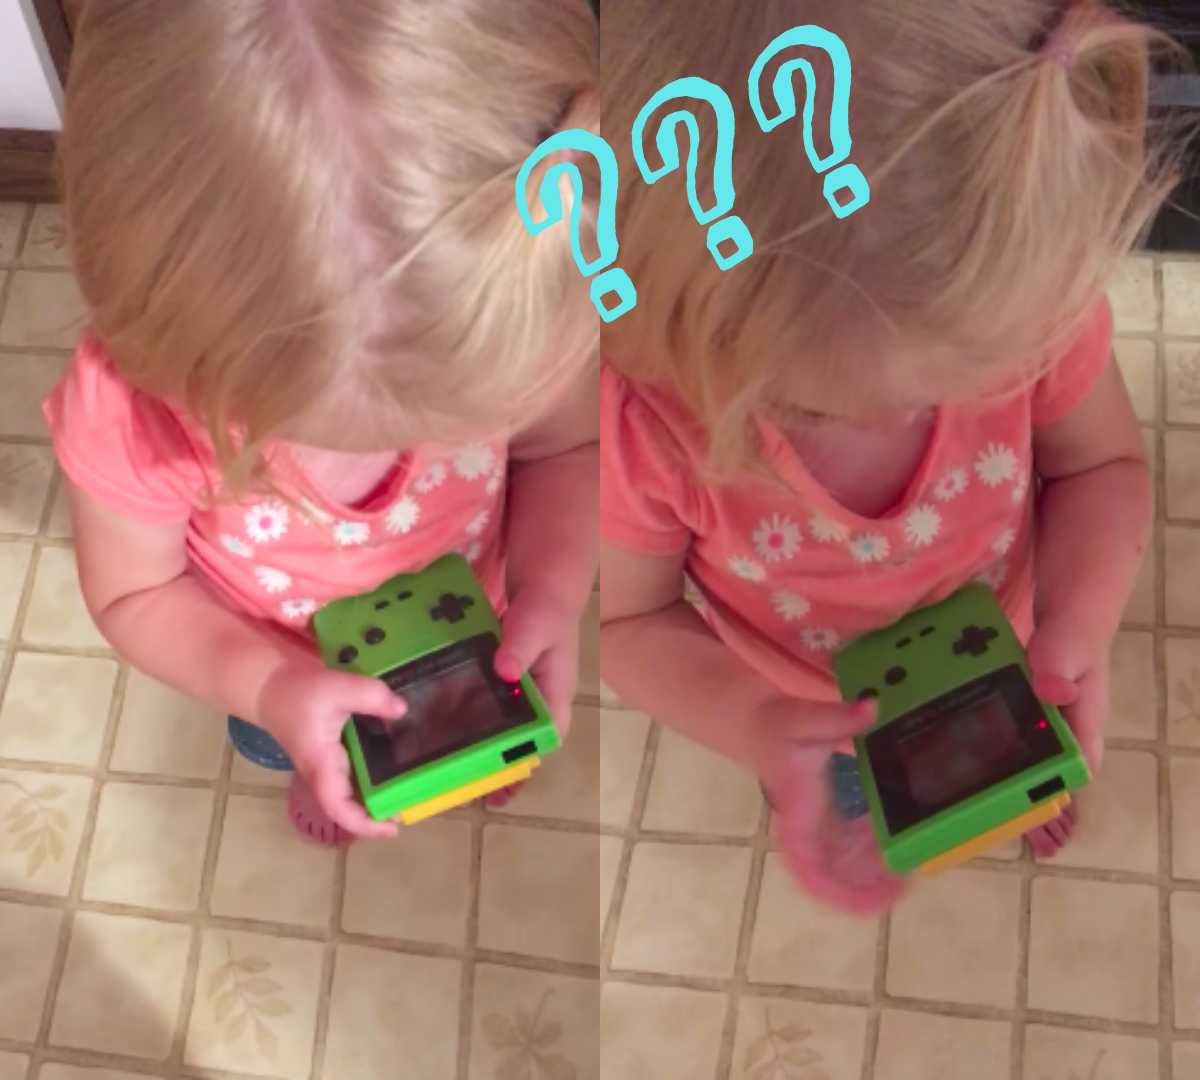 Szegény kislány Game Boy-án VALAMIÉRT nem működik az érintőképernyő :(